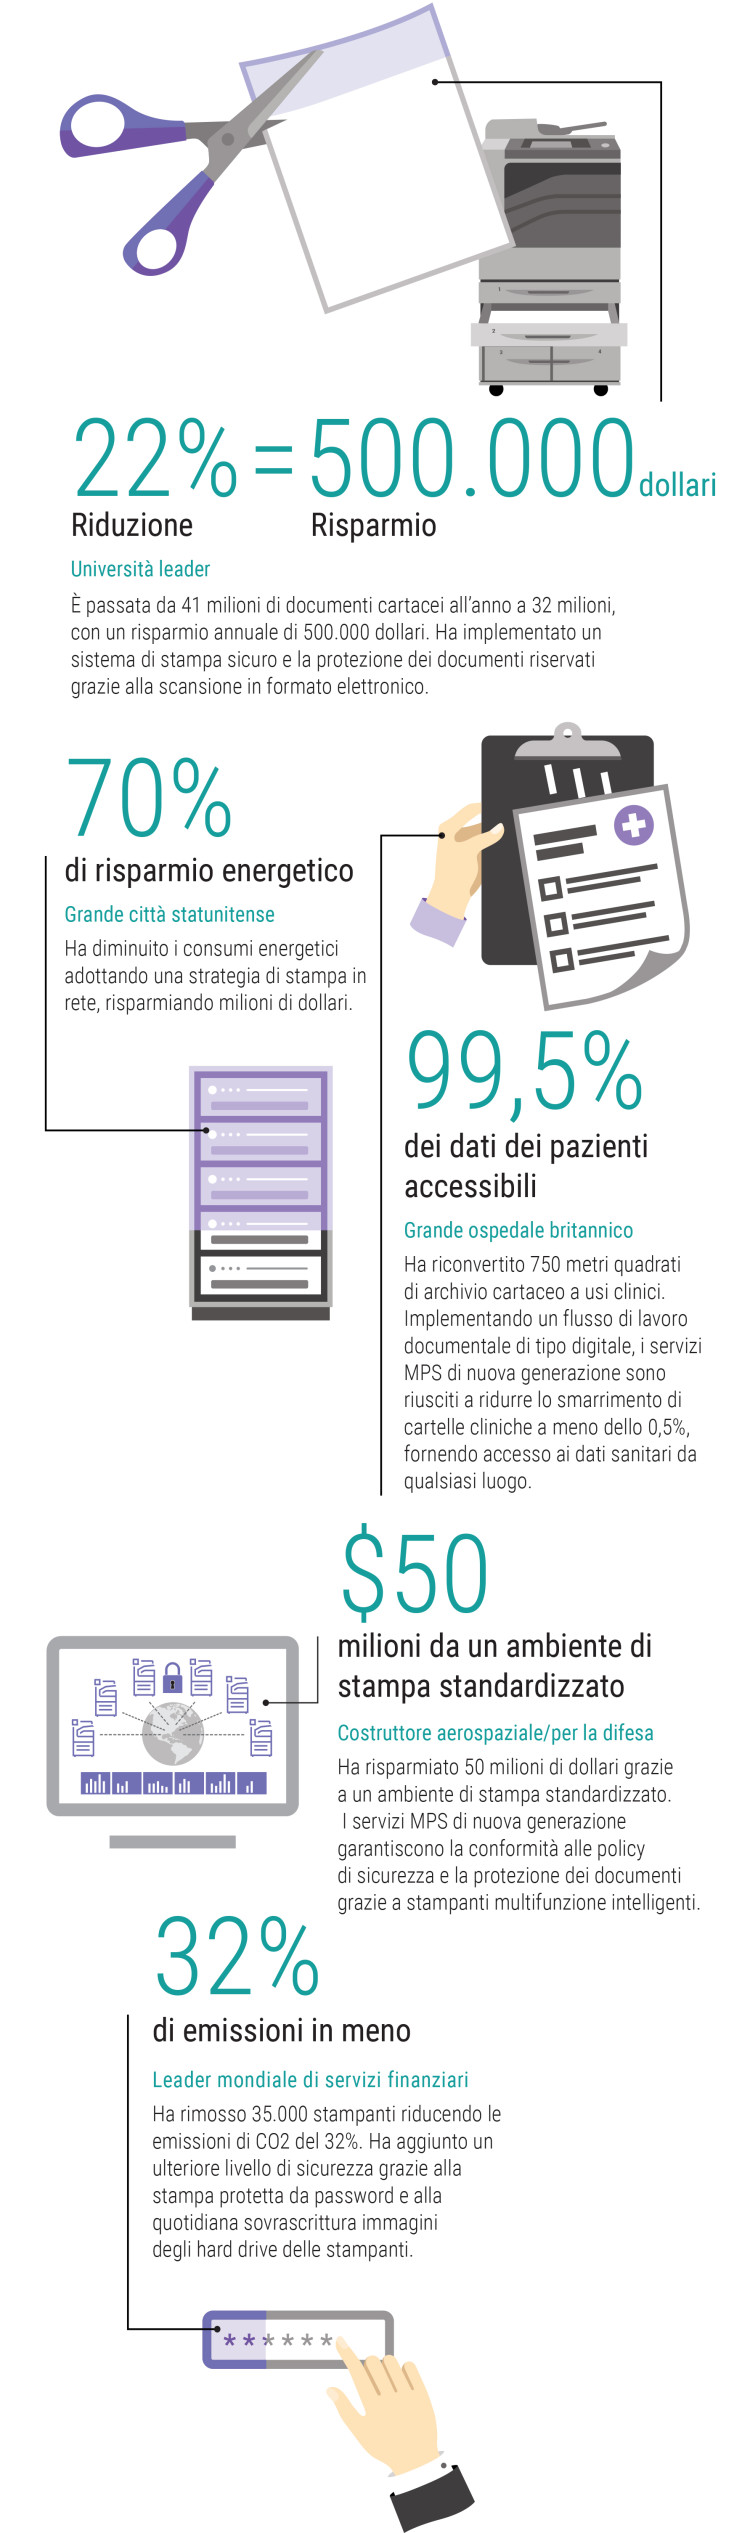 Infografica Xerox sui numerosi vantaggi dei servizi di stampa gestita